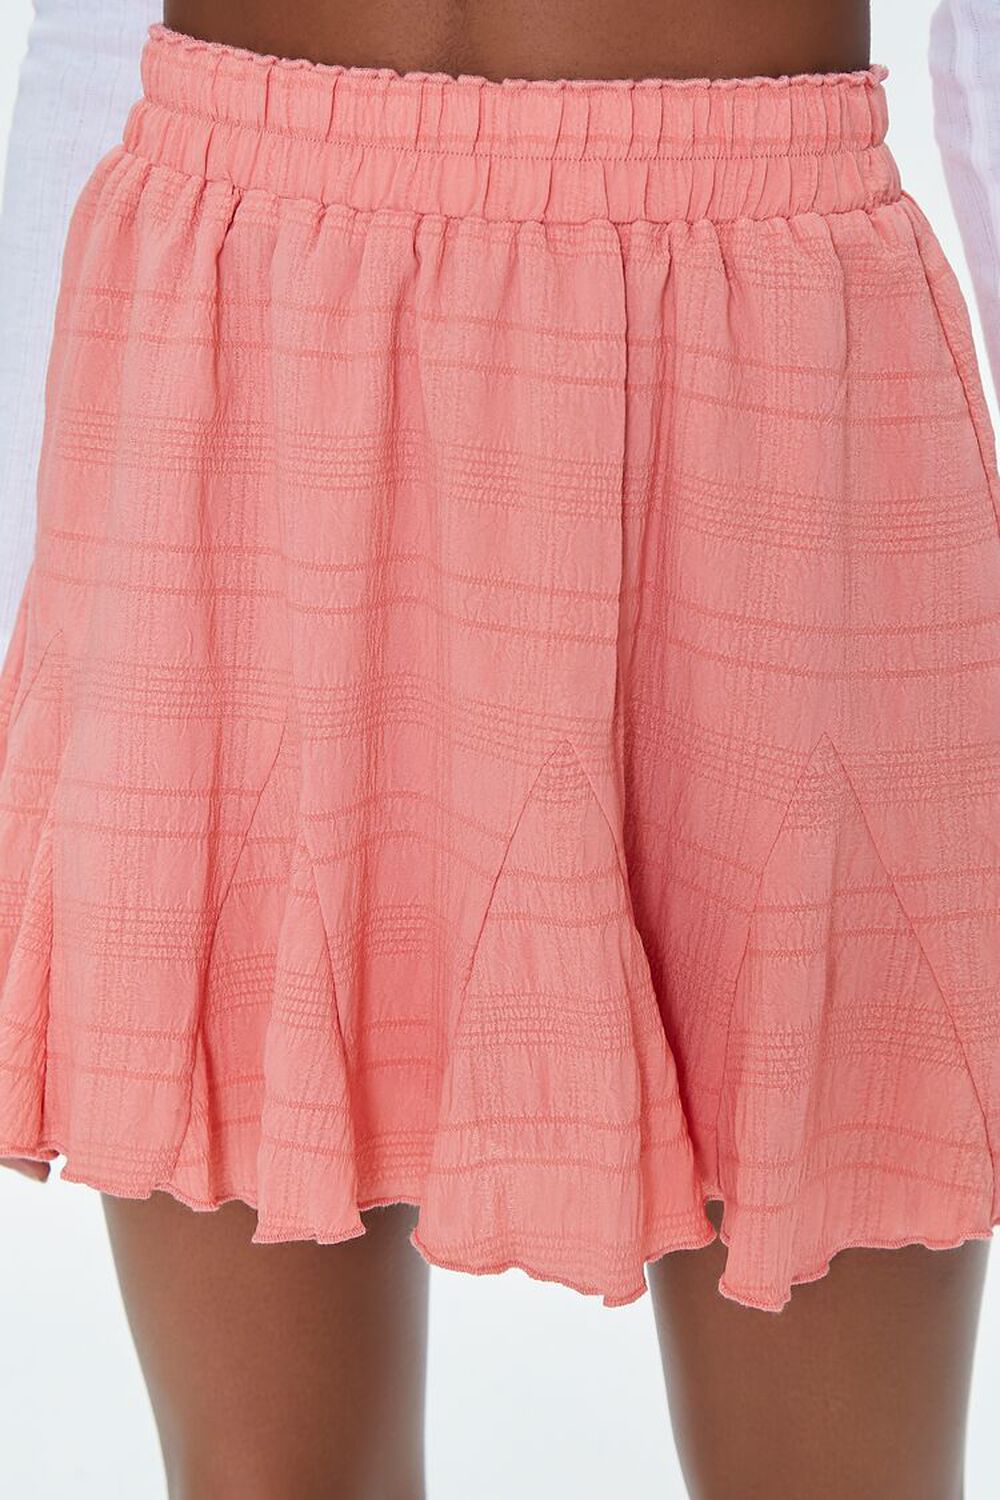 Pink High Waist Mini Skirt (Final Sale) - Verafied New York